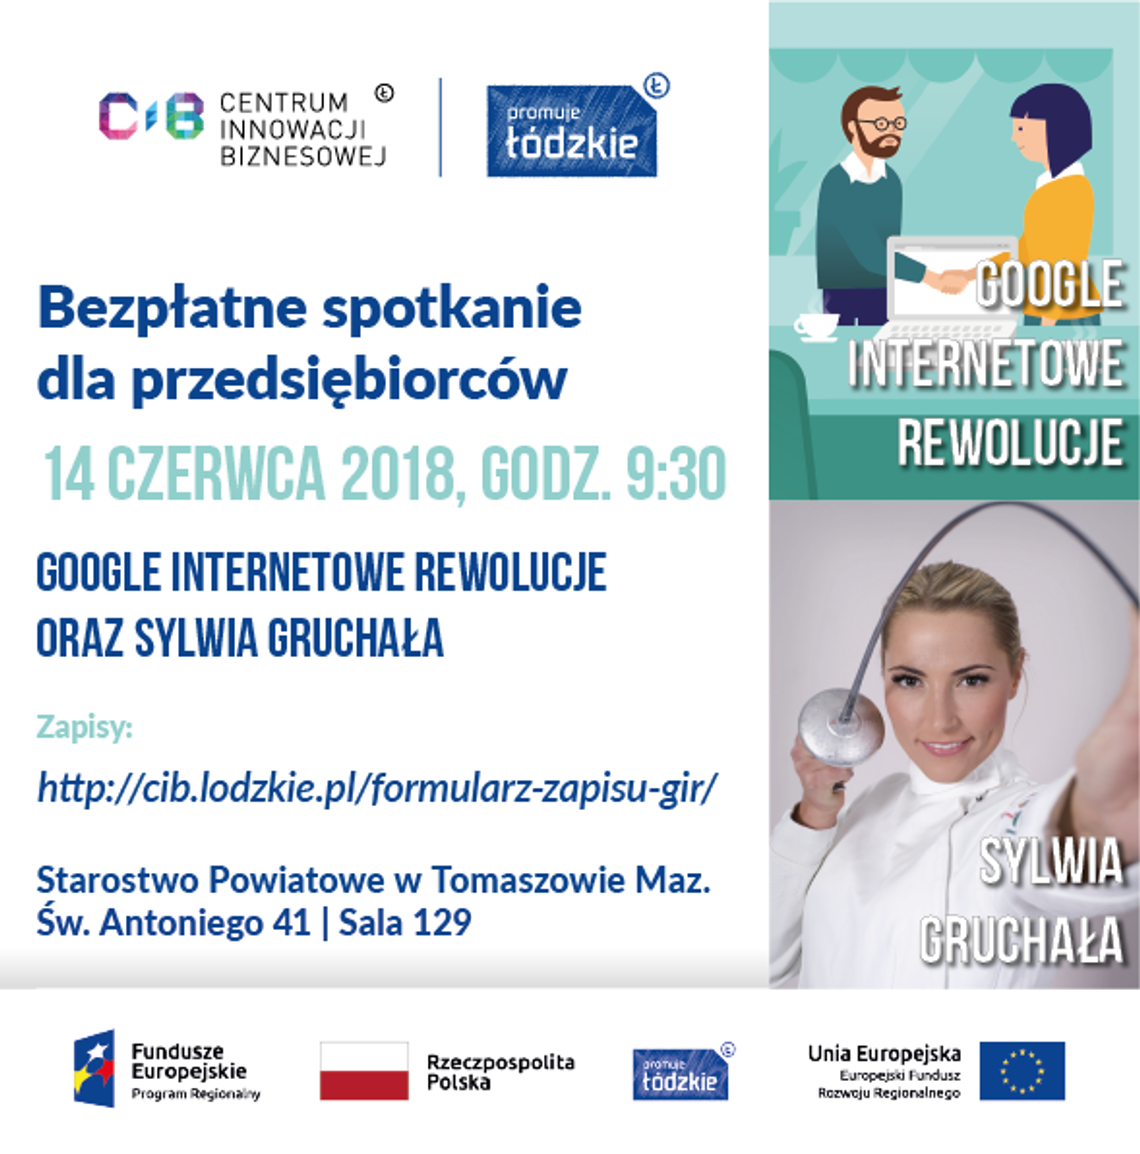 Google Internetowe Rewolucje + Sylwia Gruchała